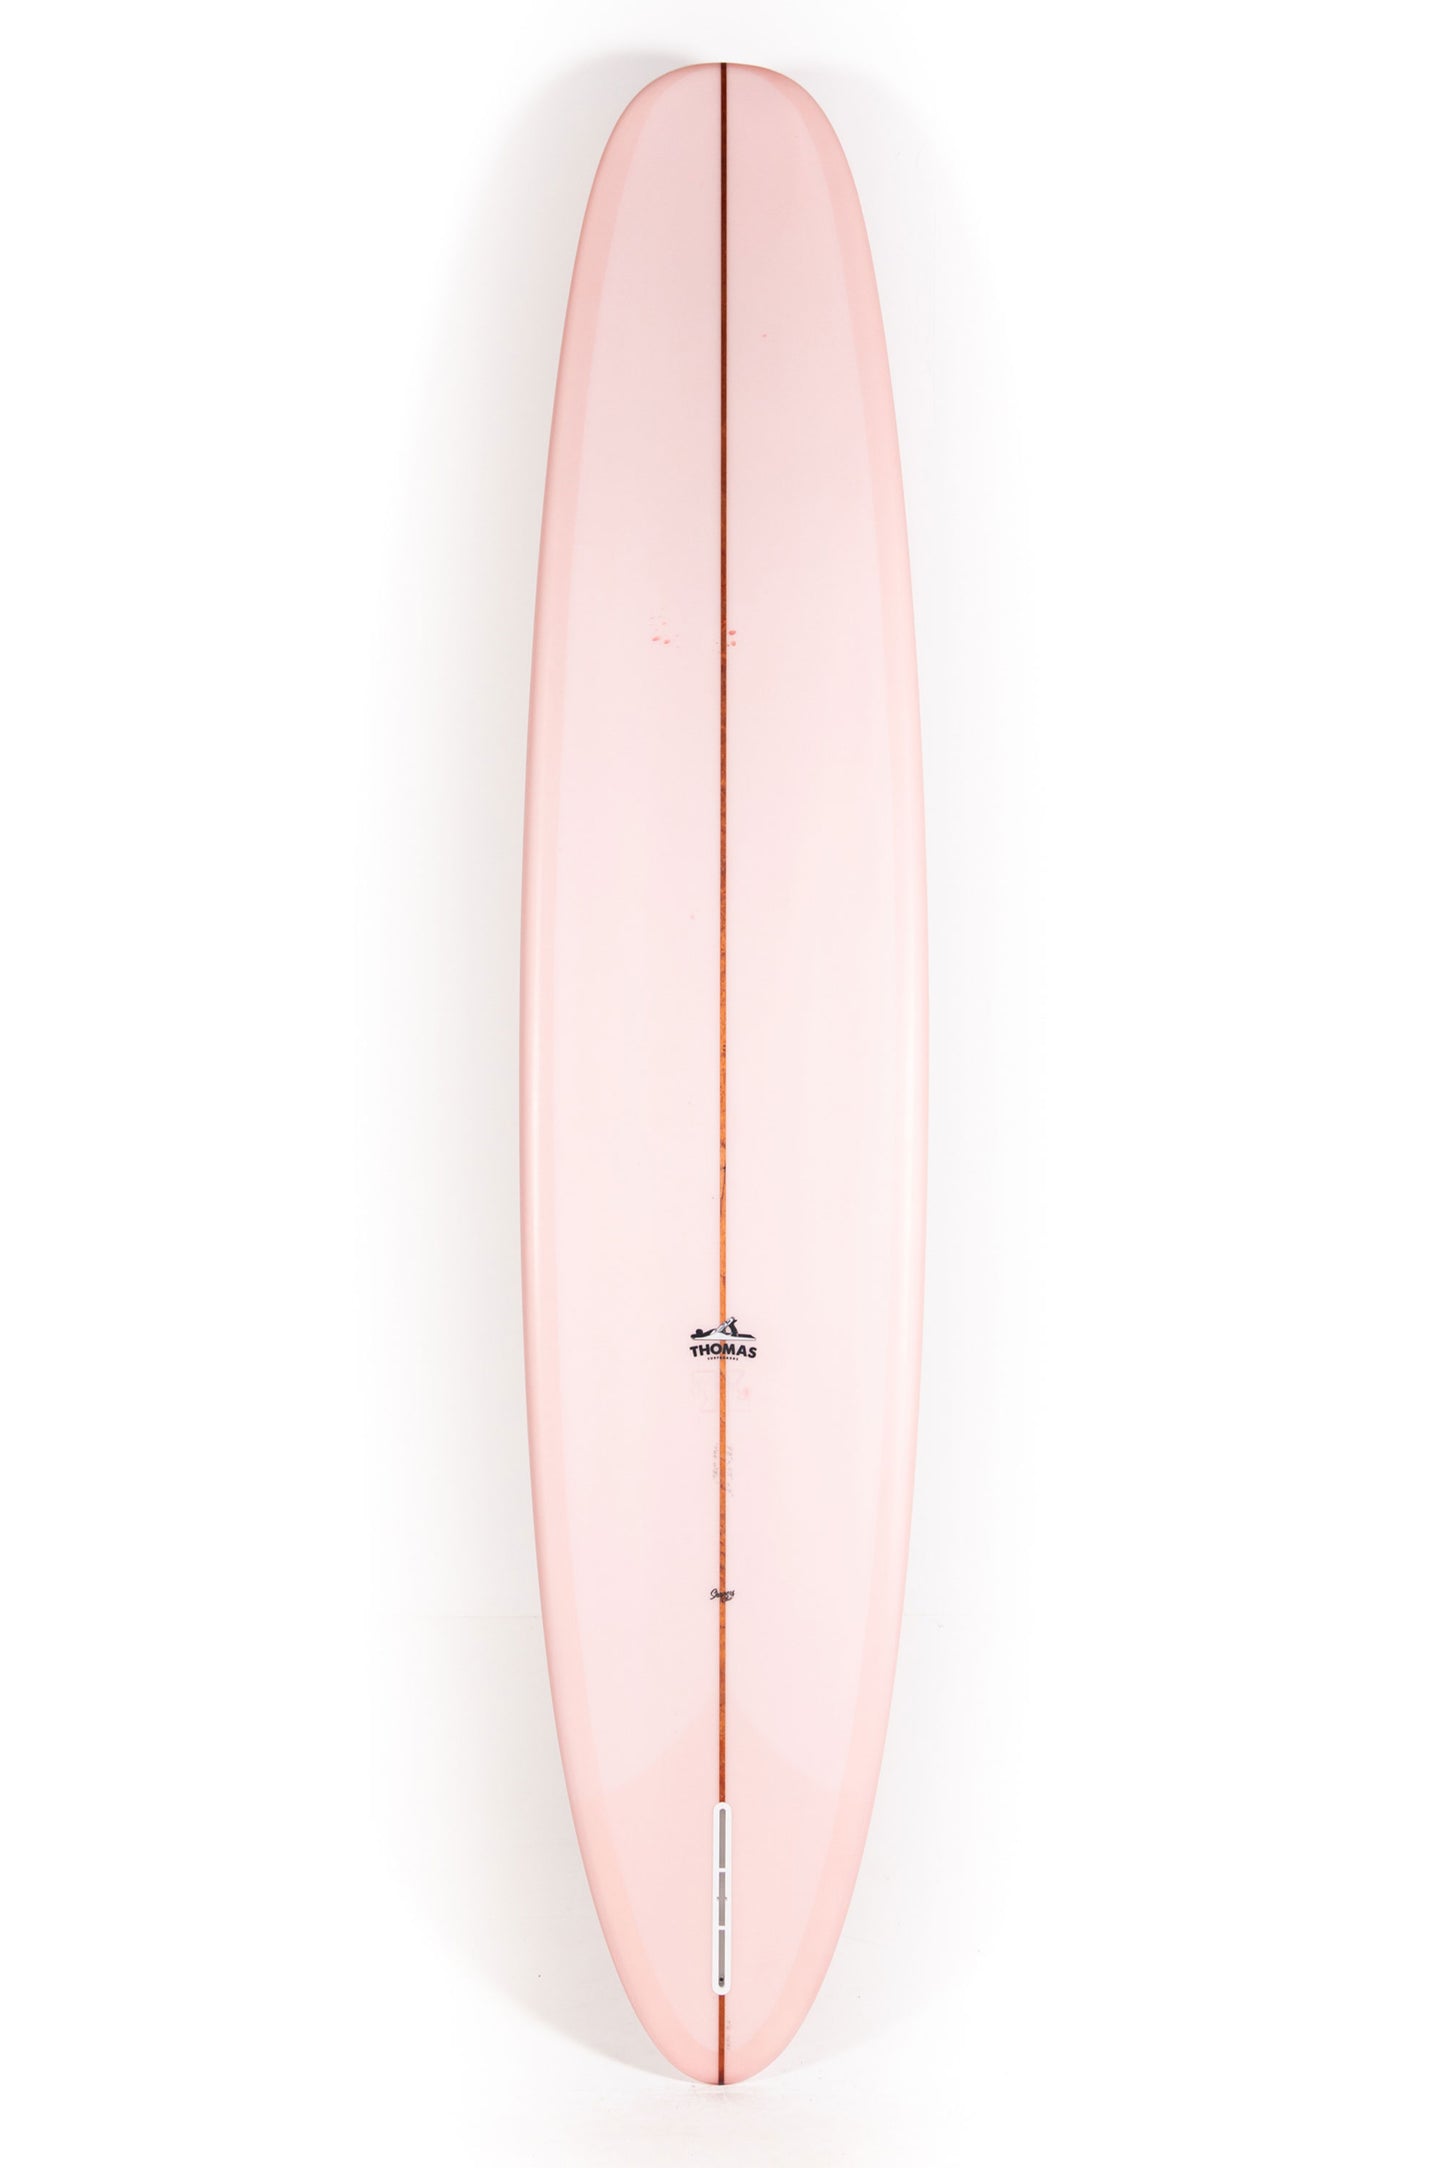 Pukas-Surf-Shop-Thomas-Bexon-Surfboards-Wizl-Thomas-Bexon-9_8_-WIZL98ROSE